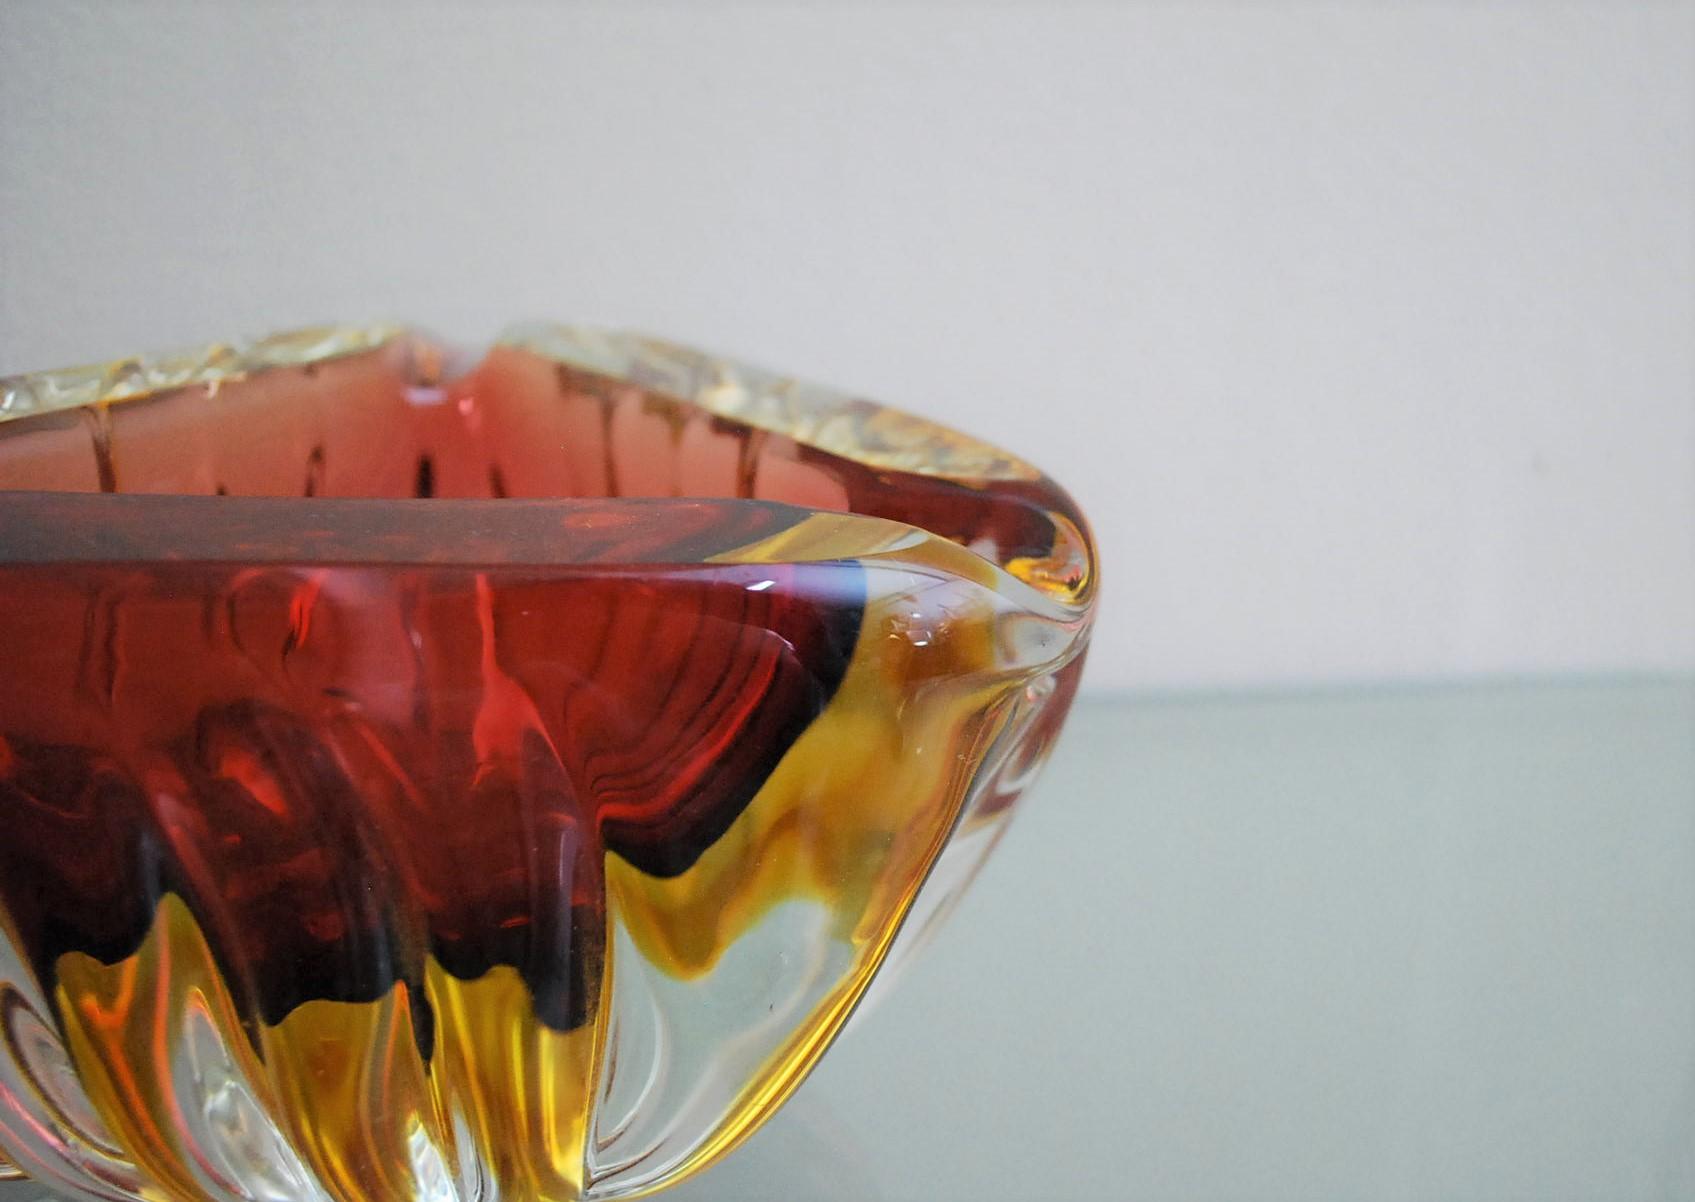 Murano Glass Ashtray Decorative Bowl Flavio Poli Midcentury Italian Design 1970s For Sale 4